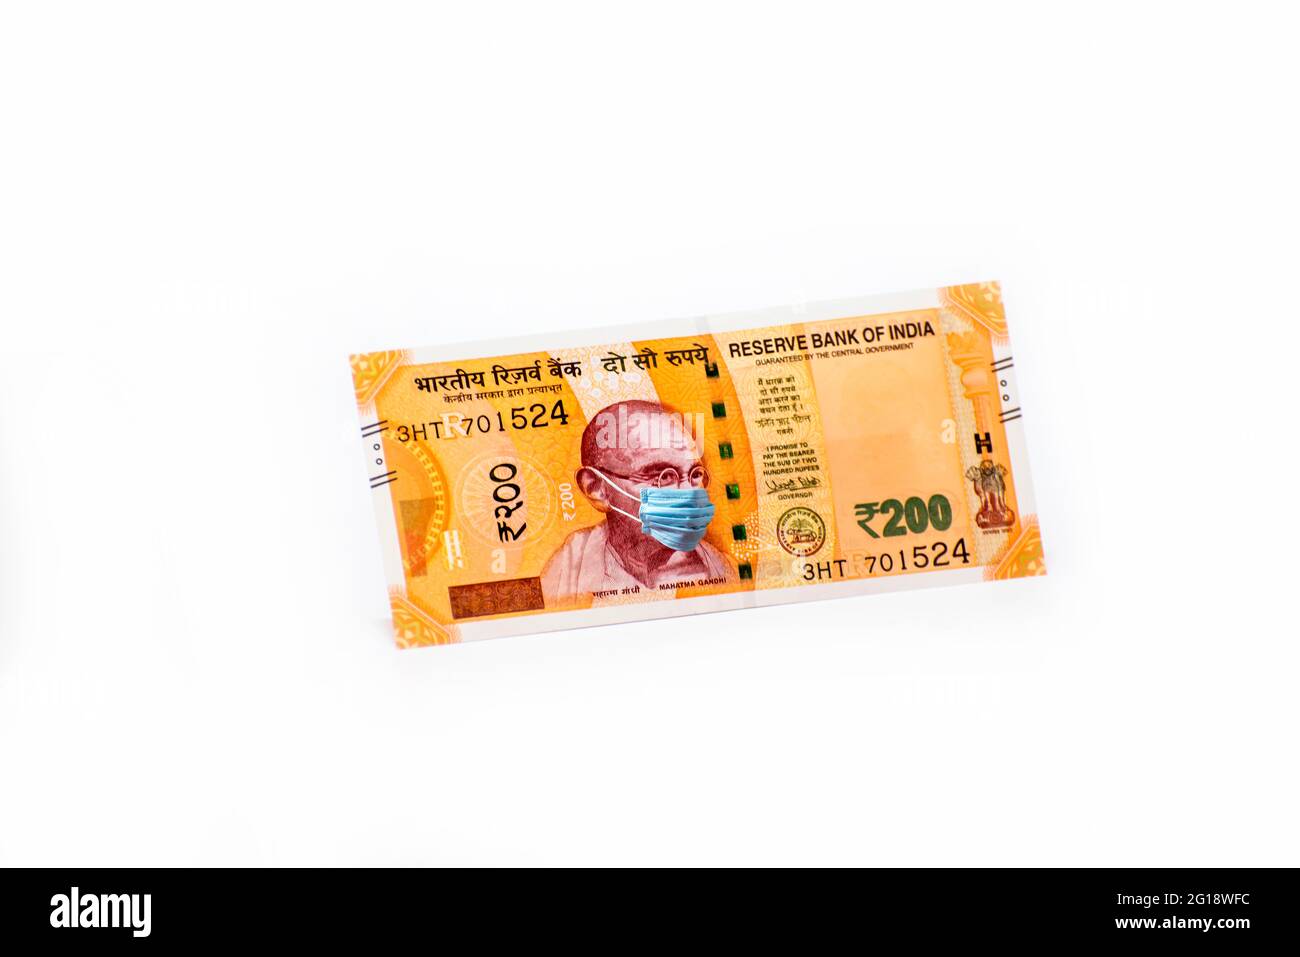 Mahatma Gandhi mit Gesichtsmaske gegen Coivd-19-Infektion. Die Weltwirtschaft ist vom Ausbruch des Corona-Virus betroffen. Stockfoto